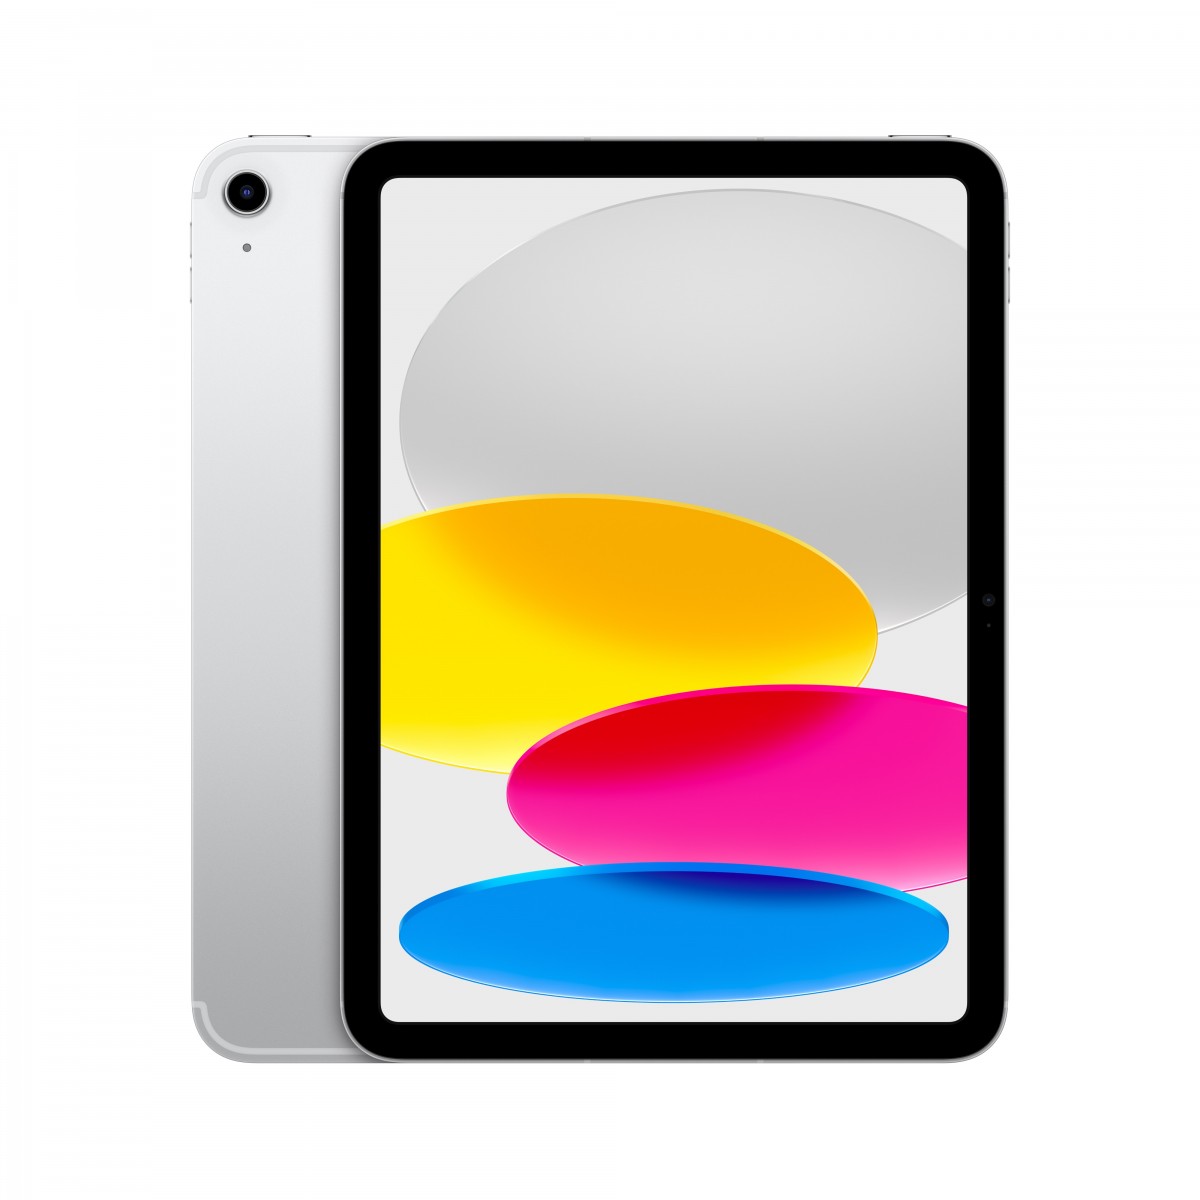 Apple iPad WF CL 64GB SILVER-BNL 10.9-inch Wi-Fi + Cellular 64 GB Silver - Tablet